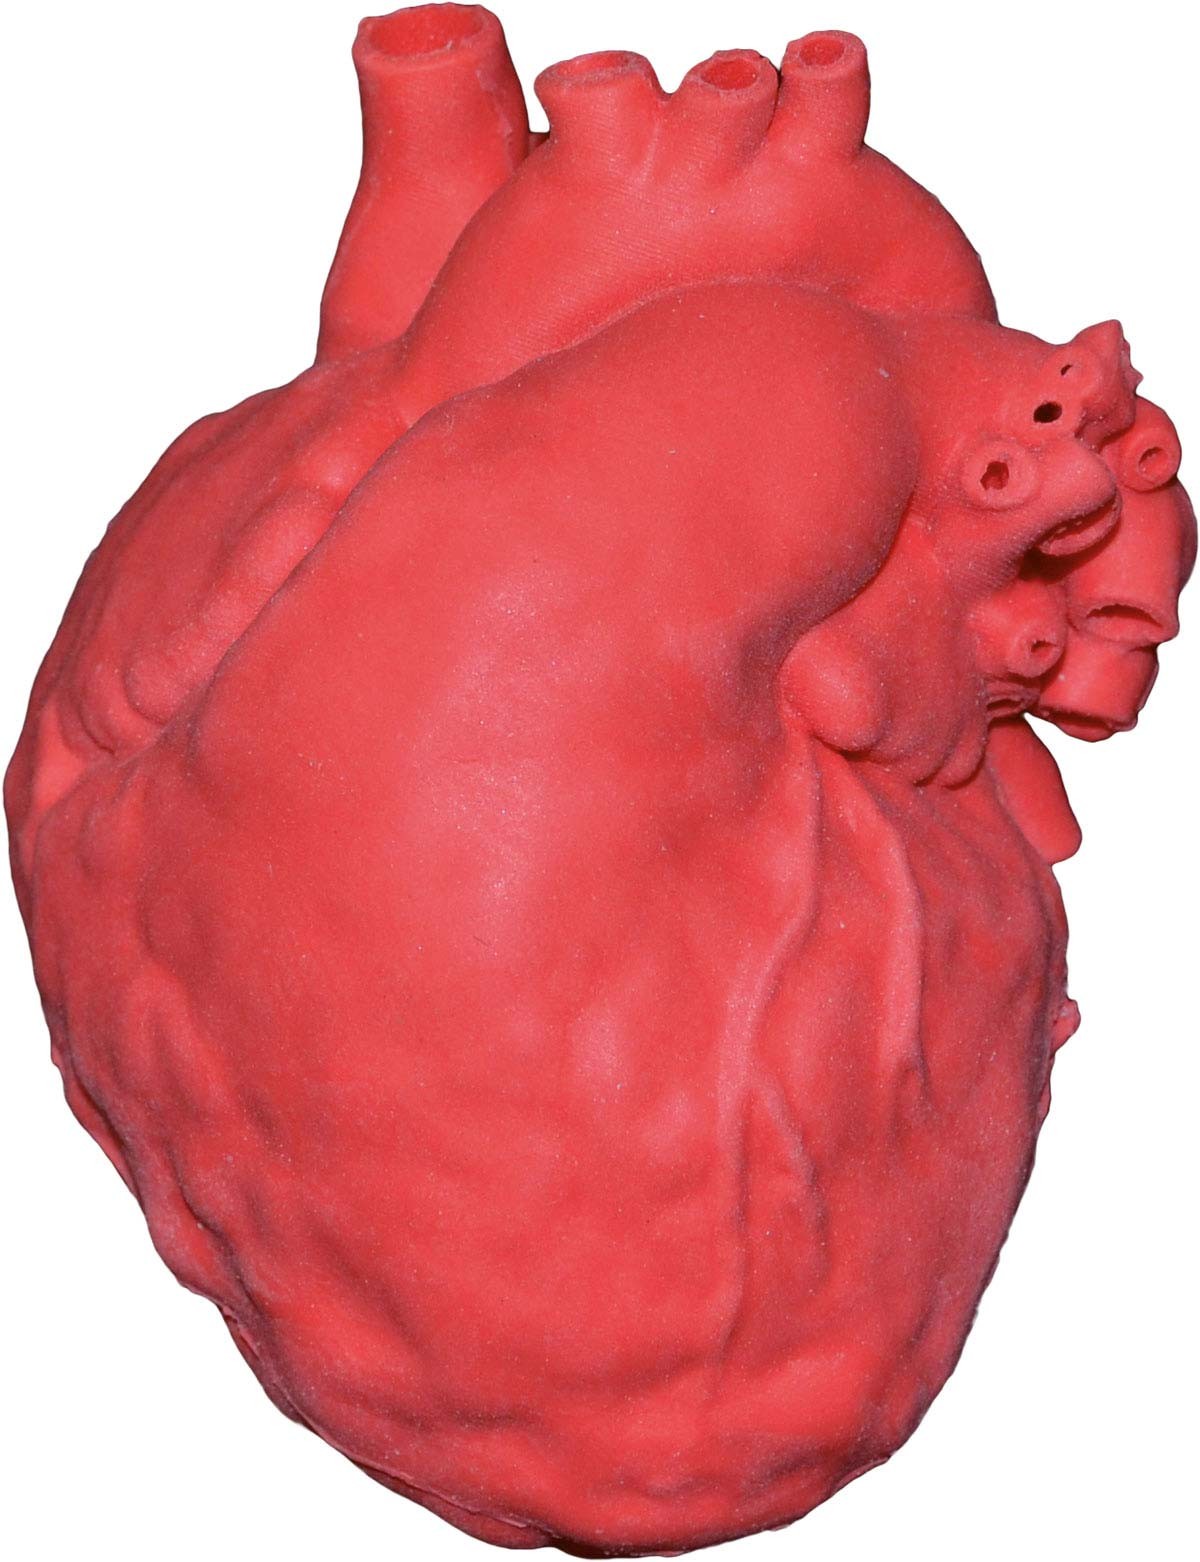 Pädiatrisches Herz mit Atriumseptumdefekt (ASD) 1